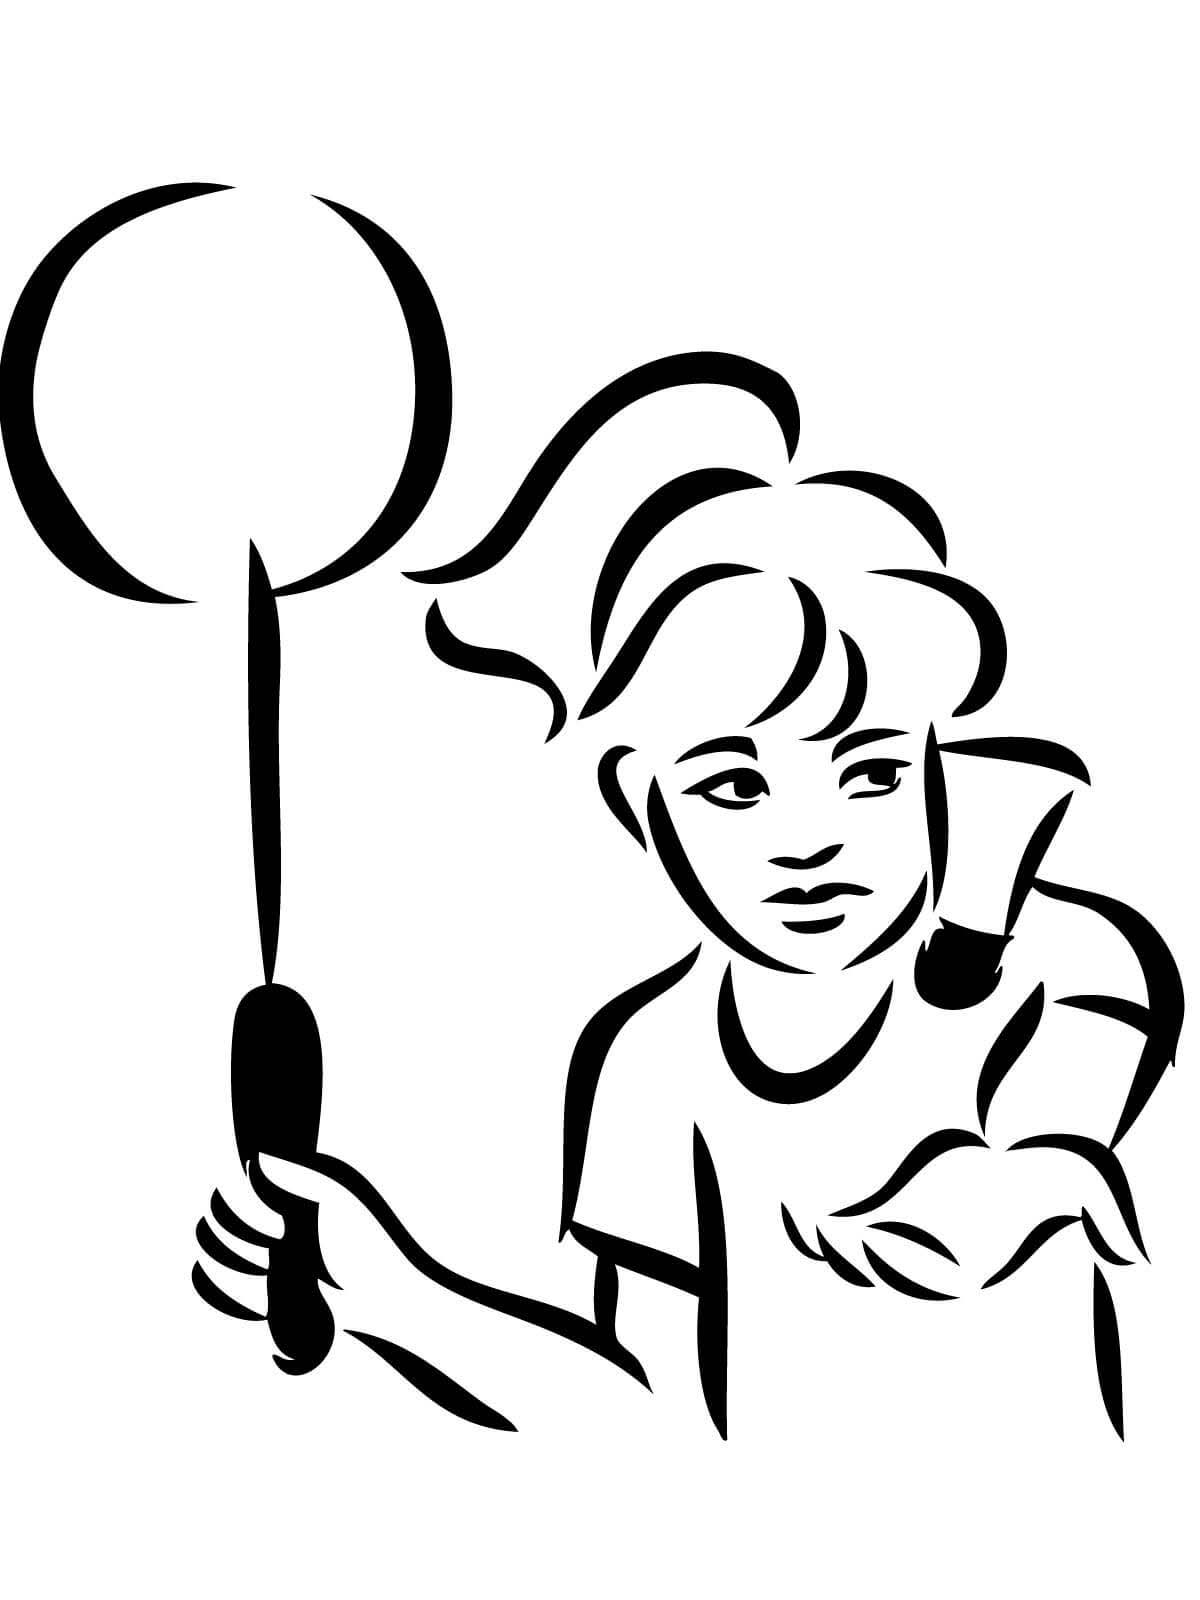 Menina sacando no badminton